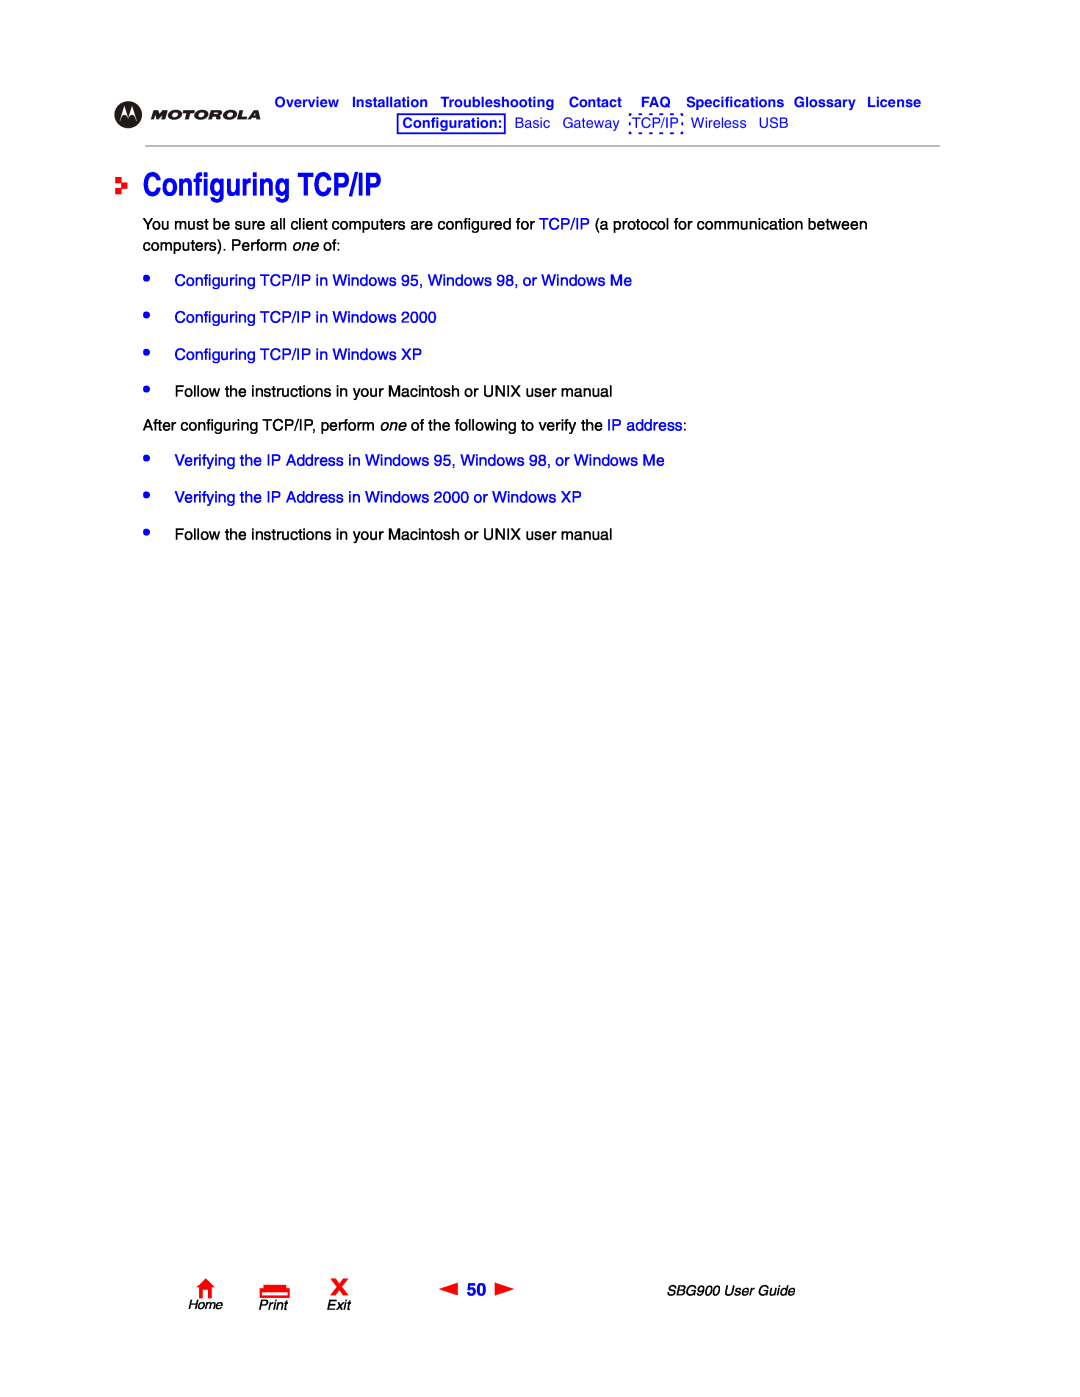 Motorola SBG900 manual Configuring TCP/IP in Windows 95, Windows 98, or Windows Me 